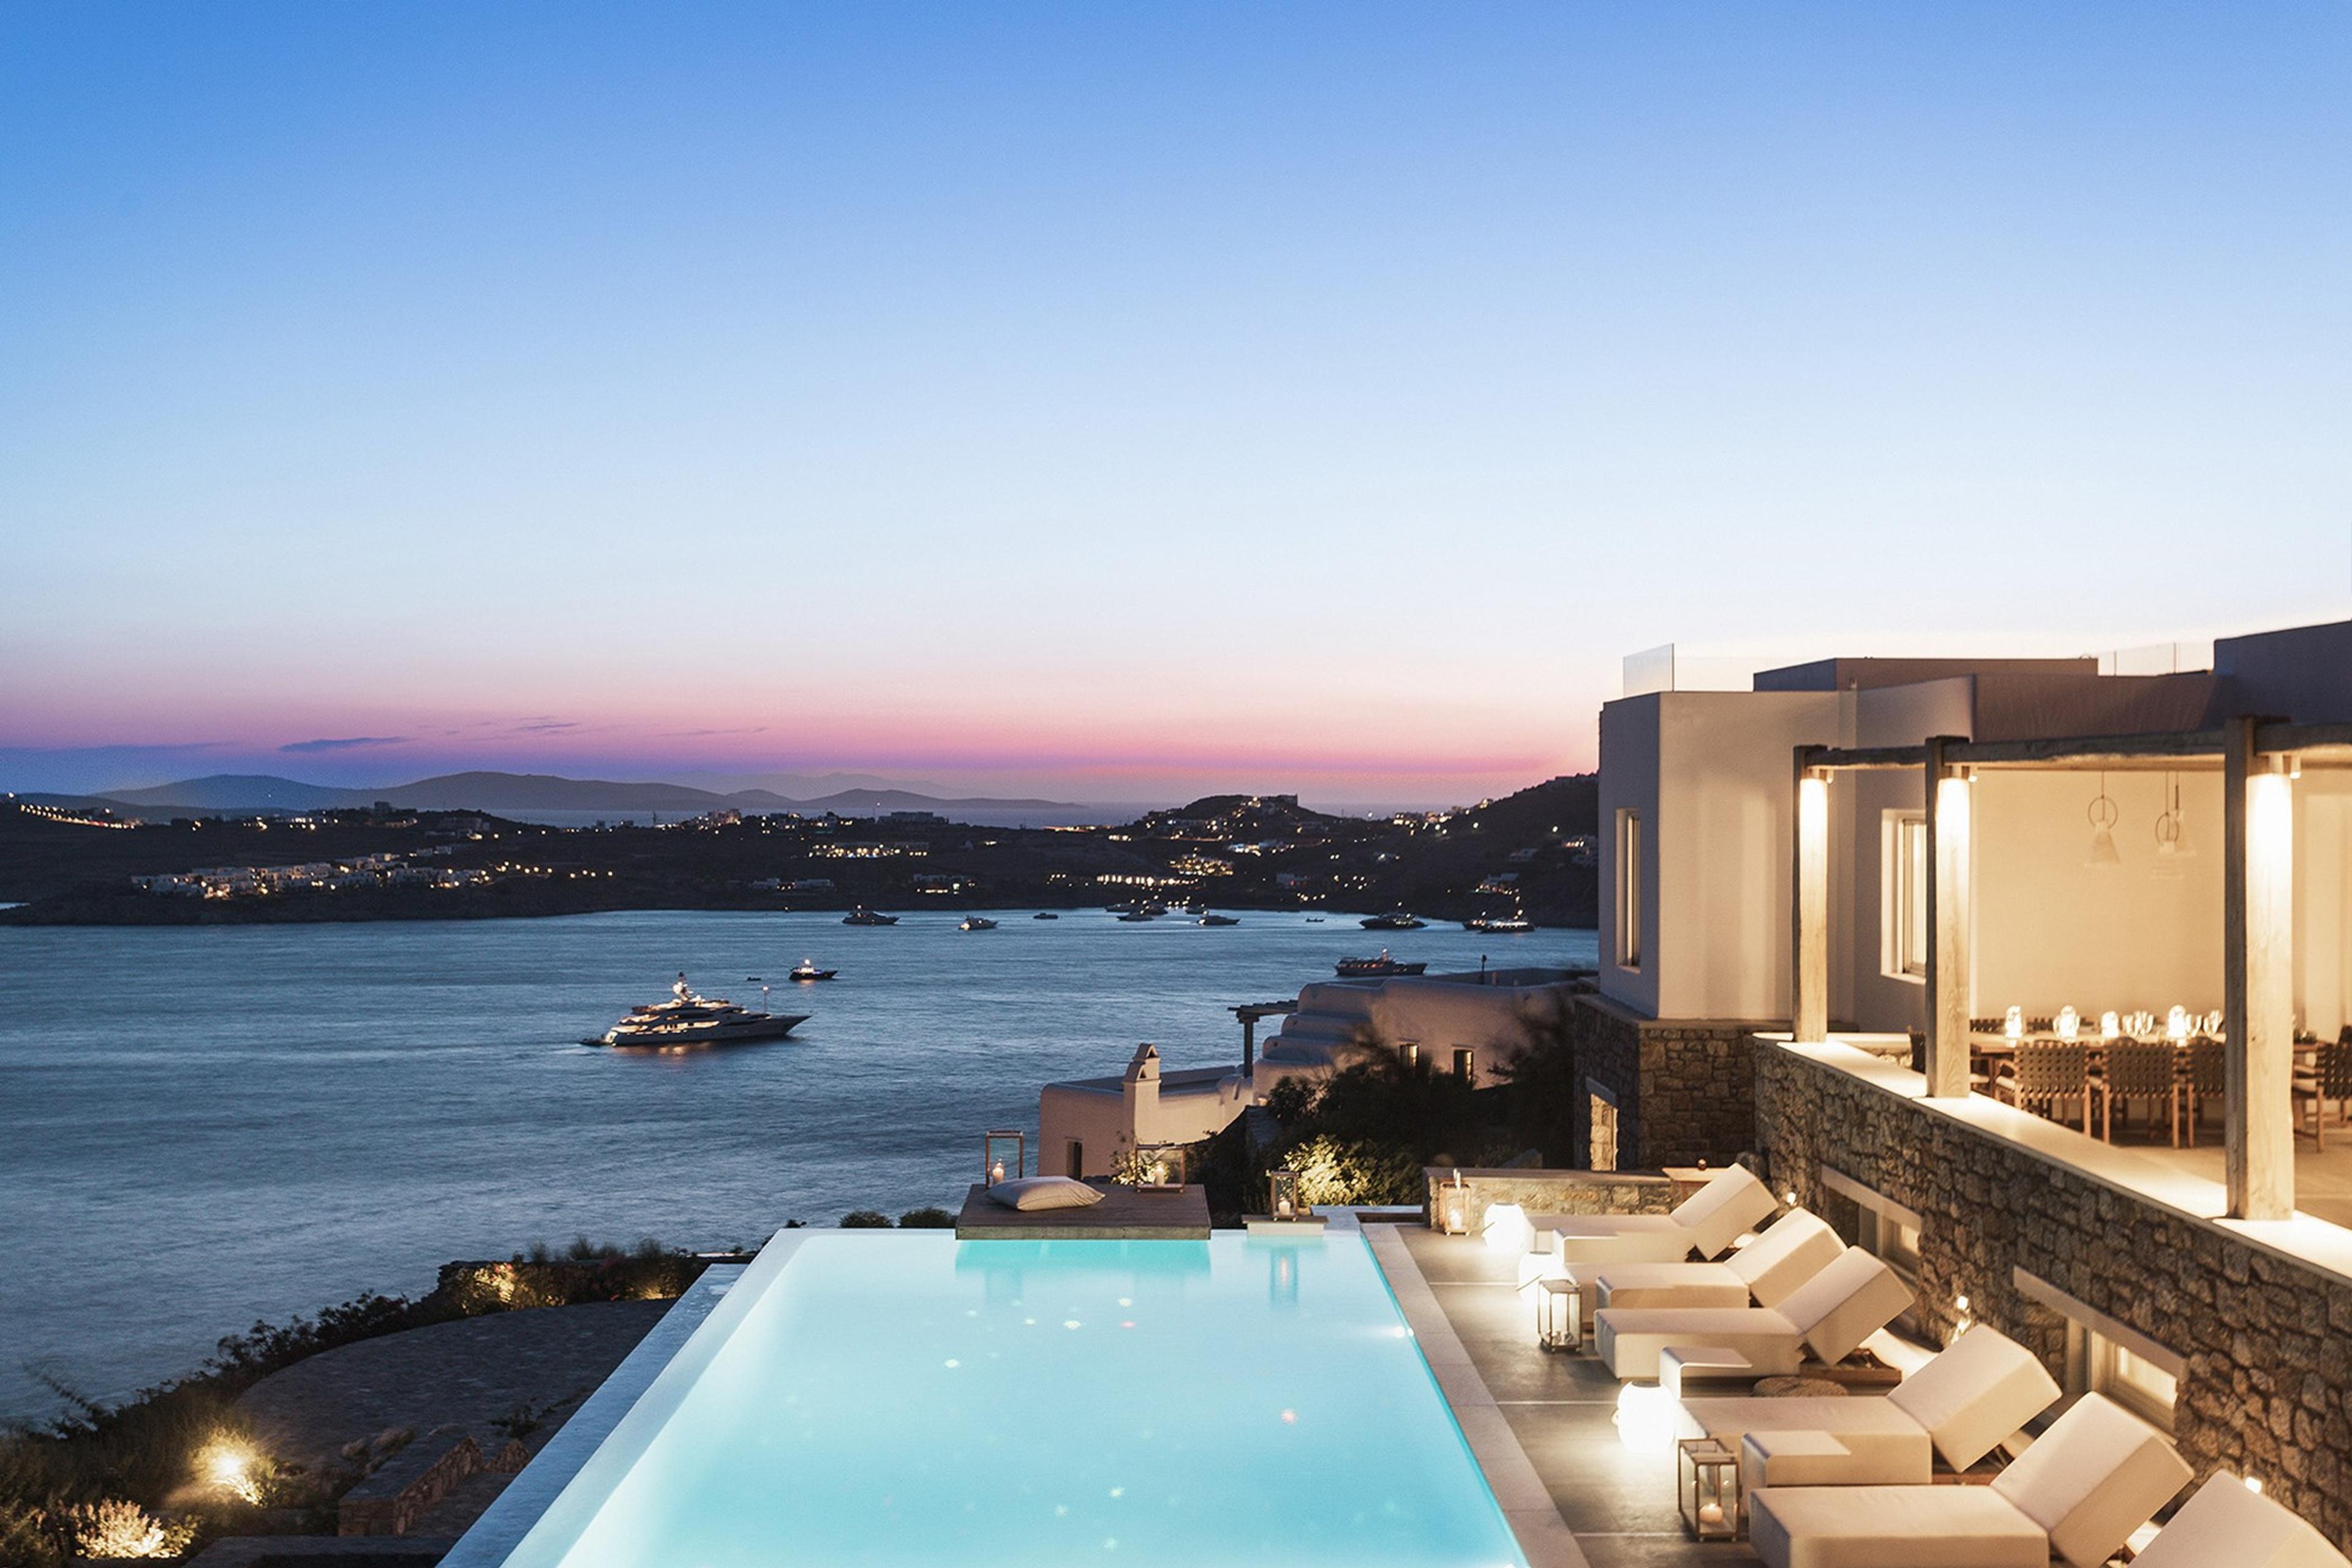 Image: Our Top 5 Luxury Sea View Villas in Mykonos